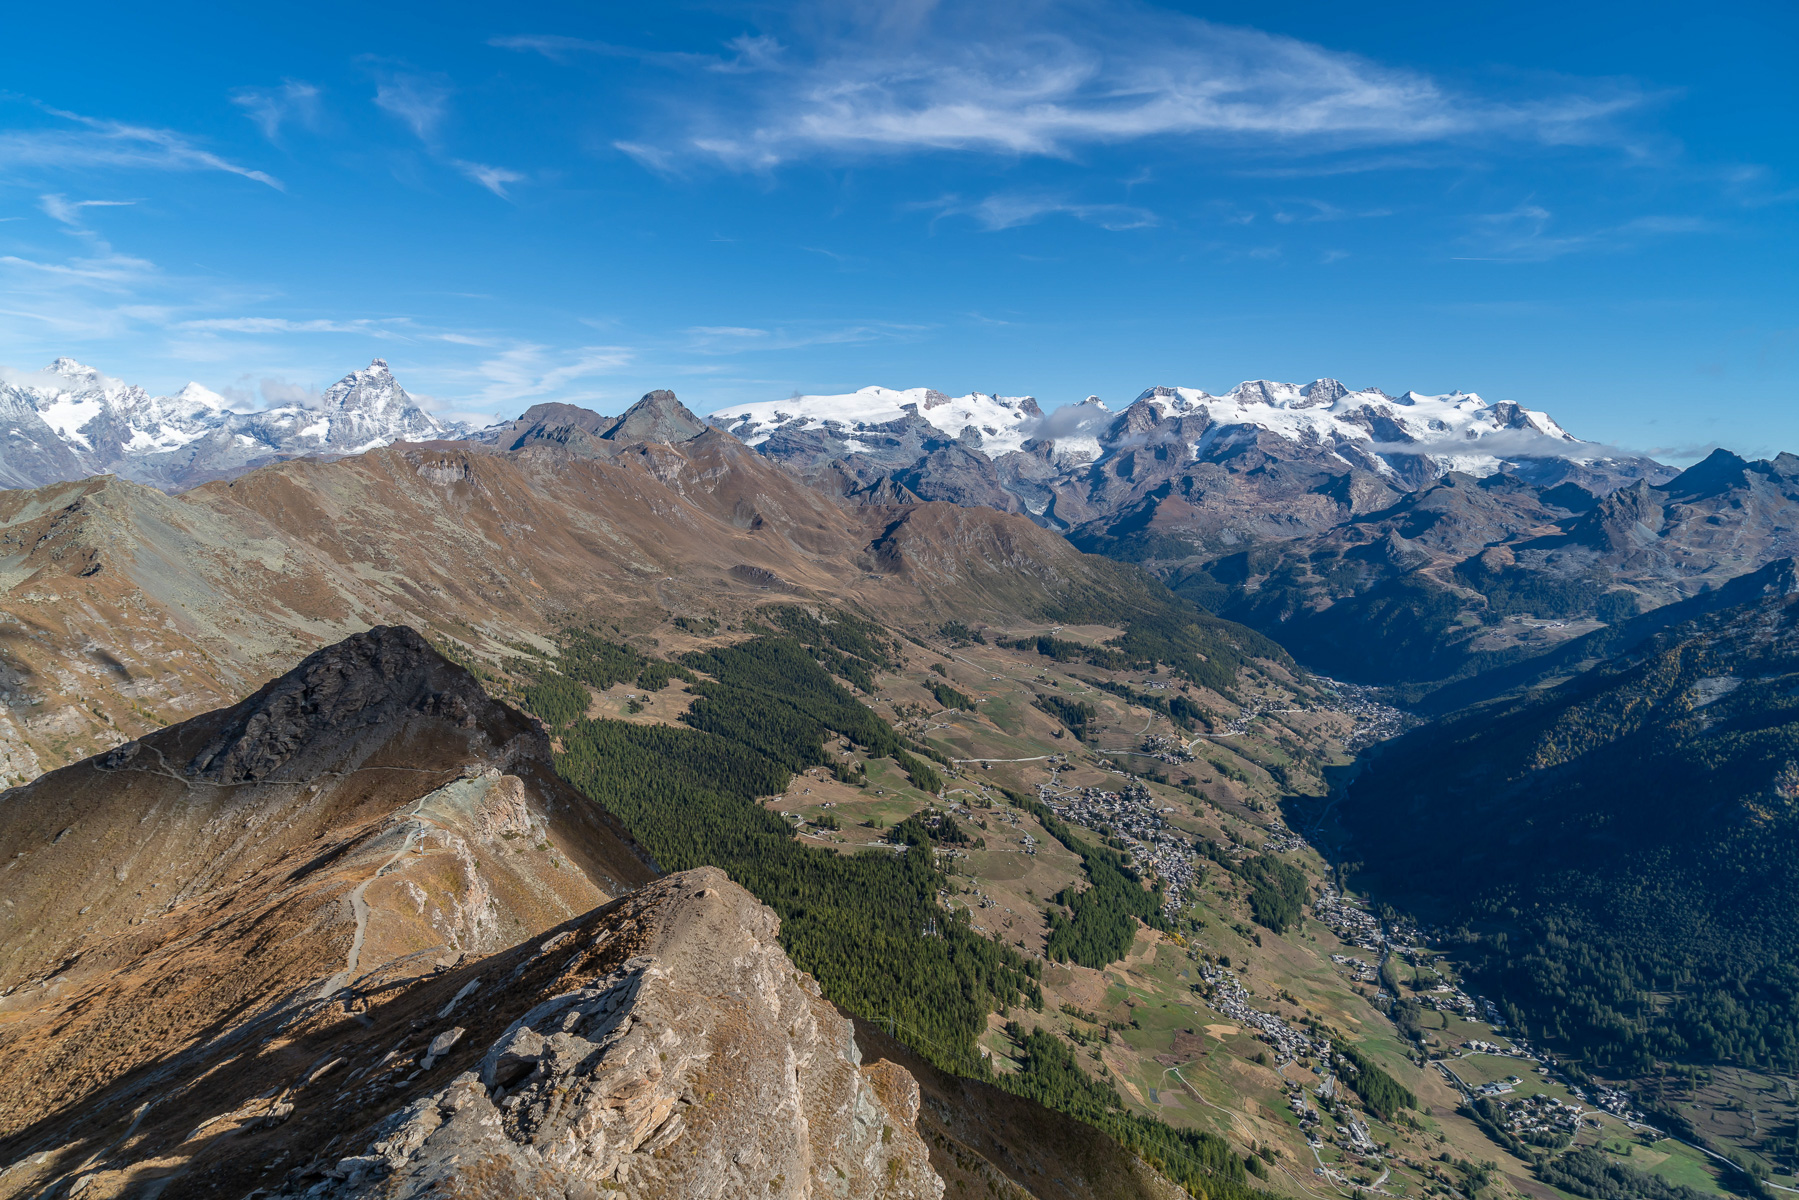 Nordblick mit Val d'Ayas, Matterhorn, Breithorn und Monte Rosa